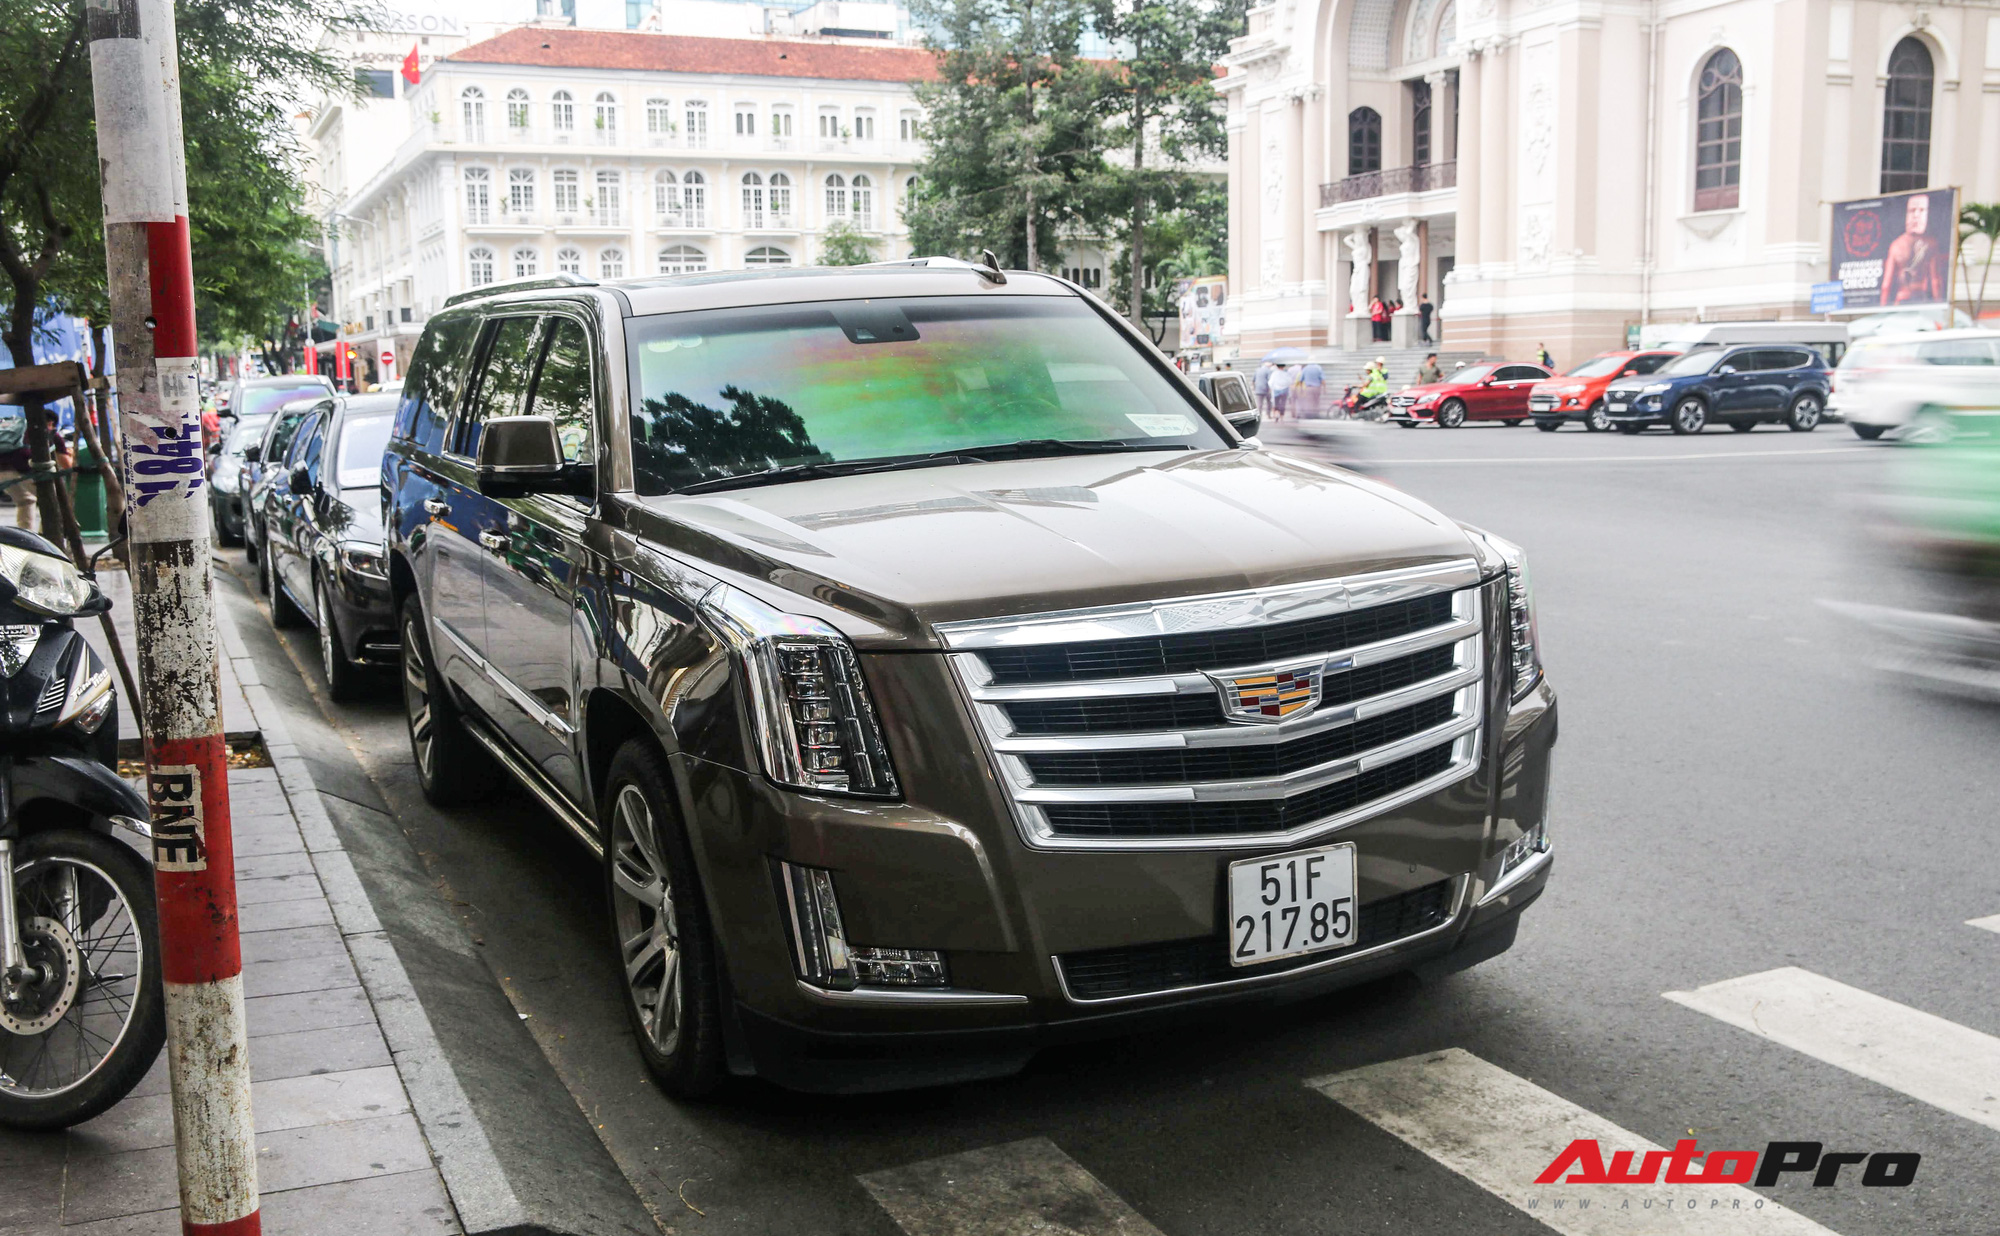 Ủng hộ 36 tỷ cho nhà nước, vua hàng hiệu Johnathan Hạnh Nguyễn còn gây choáng với bộ sưu tập xe tiền tỷ - Ảnh 7.